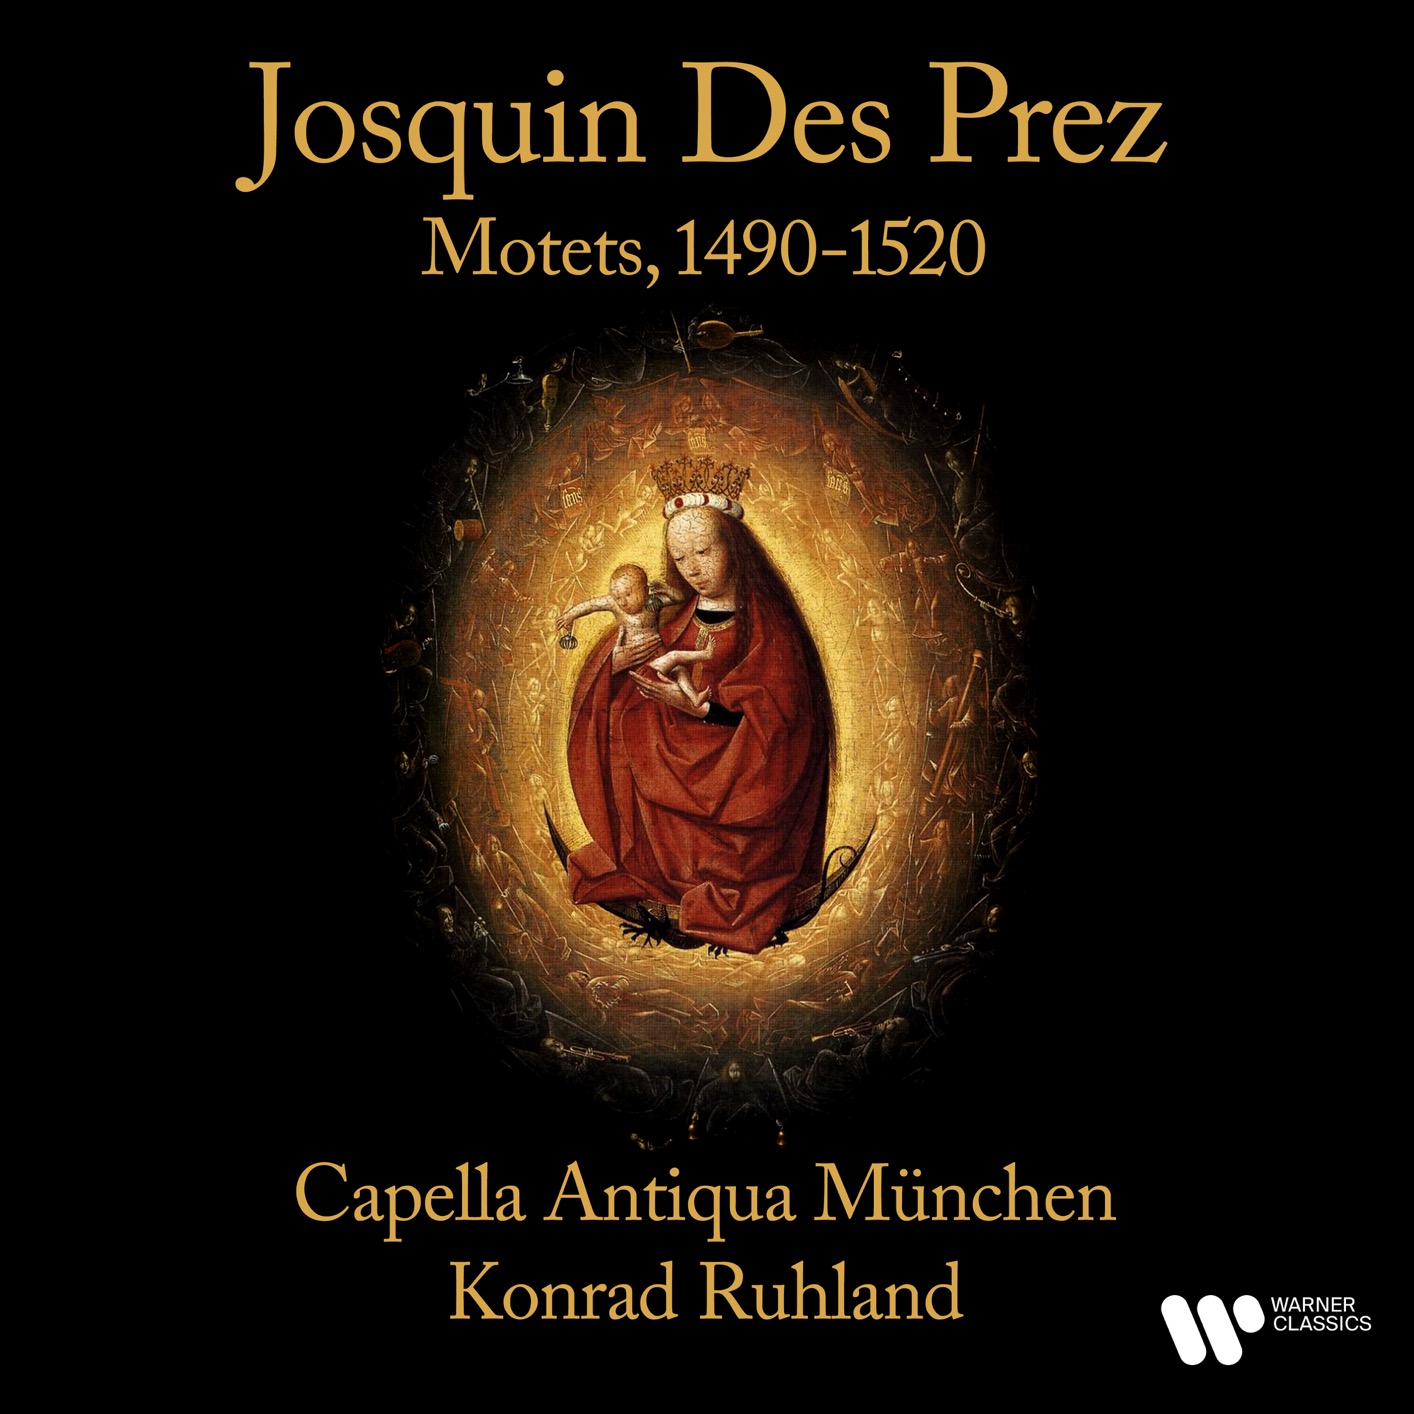 Capella Antiqua Muunchen & Konrad Ruhland - Dez Prez: Motets, 1490-1520 (Remastered) (1966/2021) [FLAC 24bit/192kHz]